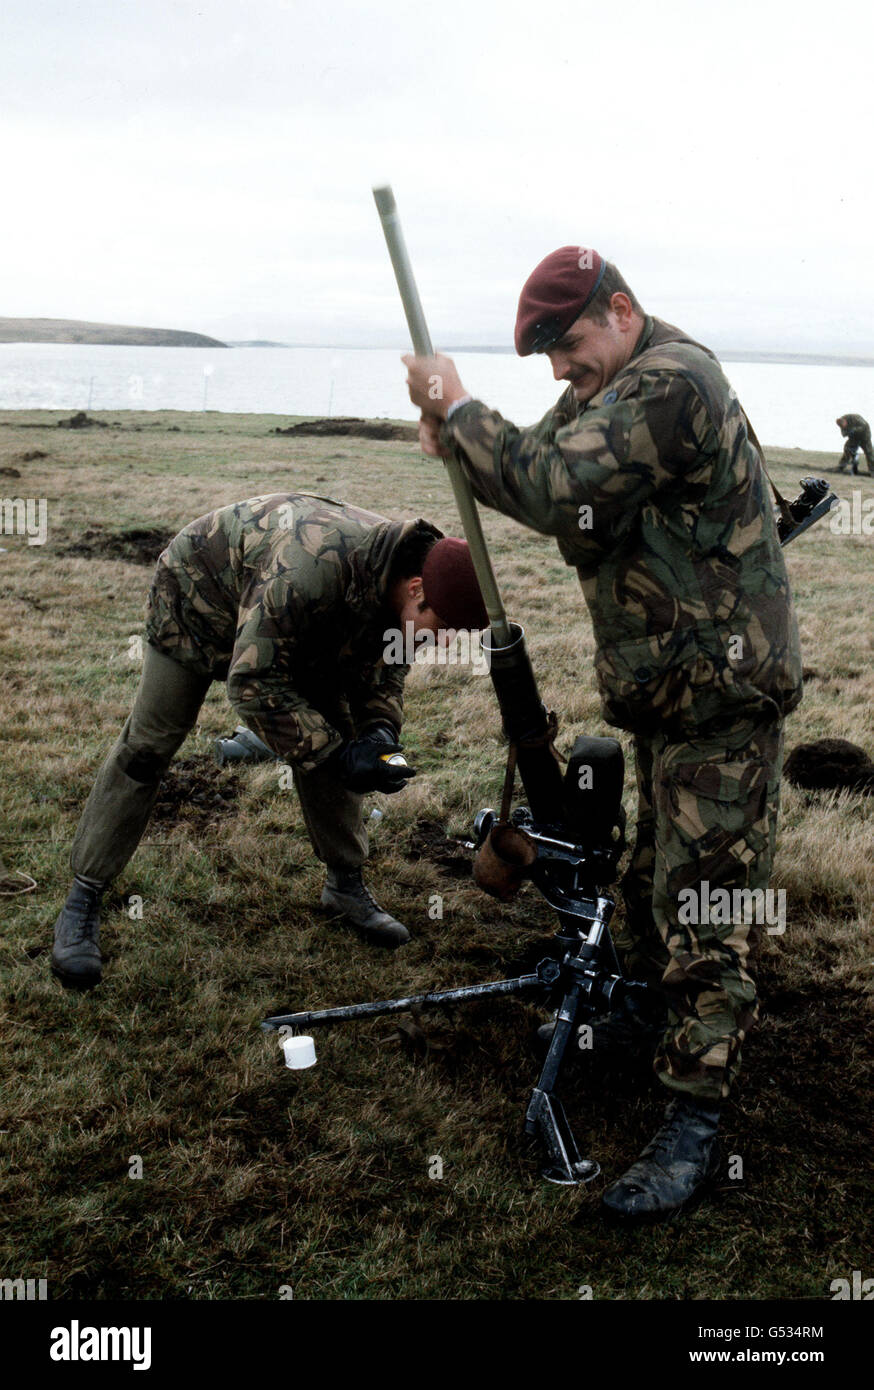 DER FALKLANDKRIEG: Fallschirmjäger der britischen Falklandinseln Task Force säubern einen Mörser auf Ost-Falkland vor dem letzten Stoß auf Port Stanley, der Hauptstadt, und der Kapitulation der argentinischen Streitkräfte am 15. Juni 1982. *25/03/02 Fallschirmjäger der britischen Falkland Islands Task Force säubern einen Mörser auf Ost-Falkland vor dem letzten Schub auf Port Stanley, der Hauptstadt, und der Kapitulation der argentinischen Streitkräfte am 15. Juni 1982. Der 20. Jahrestag der Invasion der Falklandinseln durch argentinische Truppen wird am 2. April 2002 stattfinden. Stockfoto